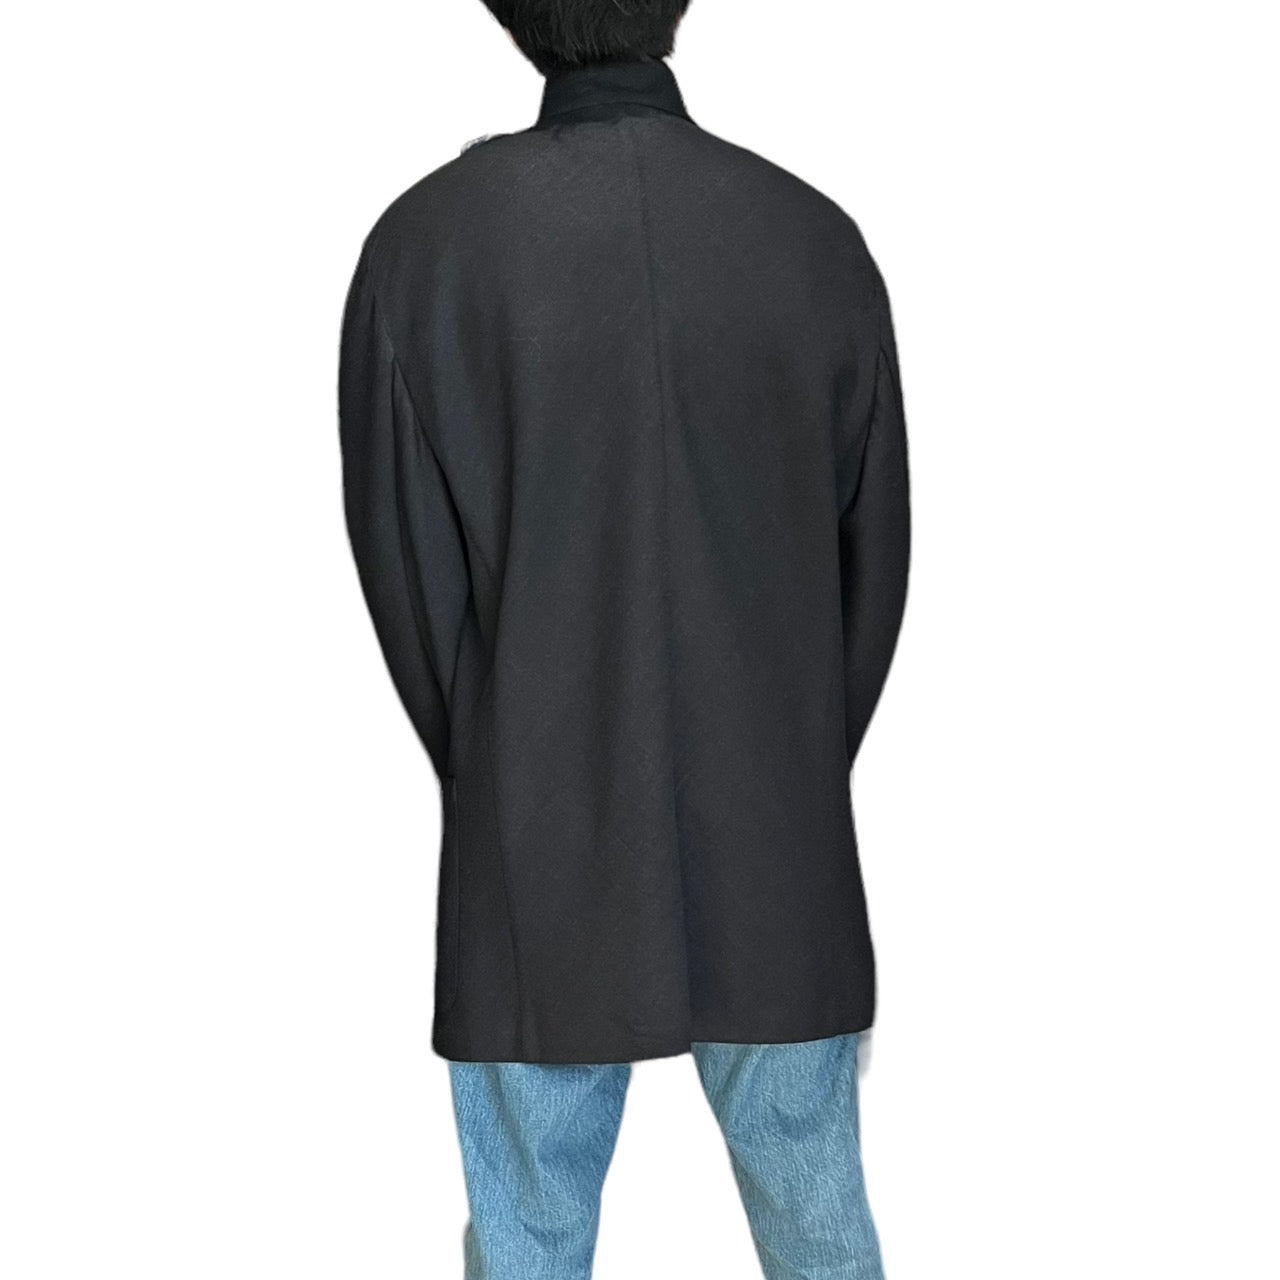 HERMES(エルメス)  stand collar wool jacket/スタンドカラーウールジャケット/マオカラージャケットテーラードジャケット 表記無し(XLサイズ程度) チャコールグレー